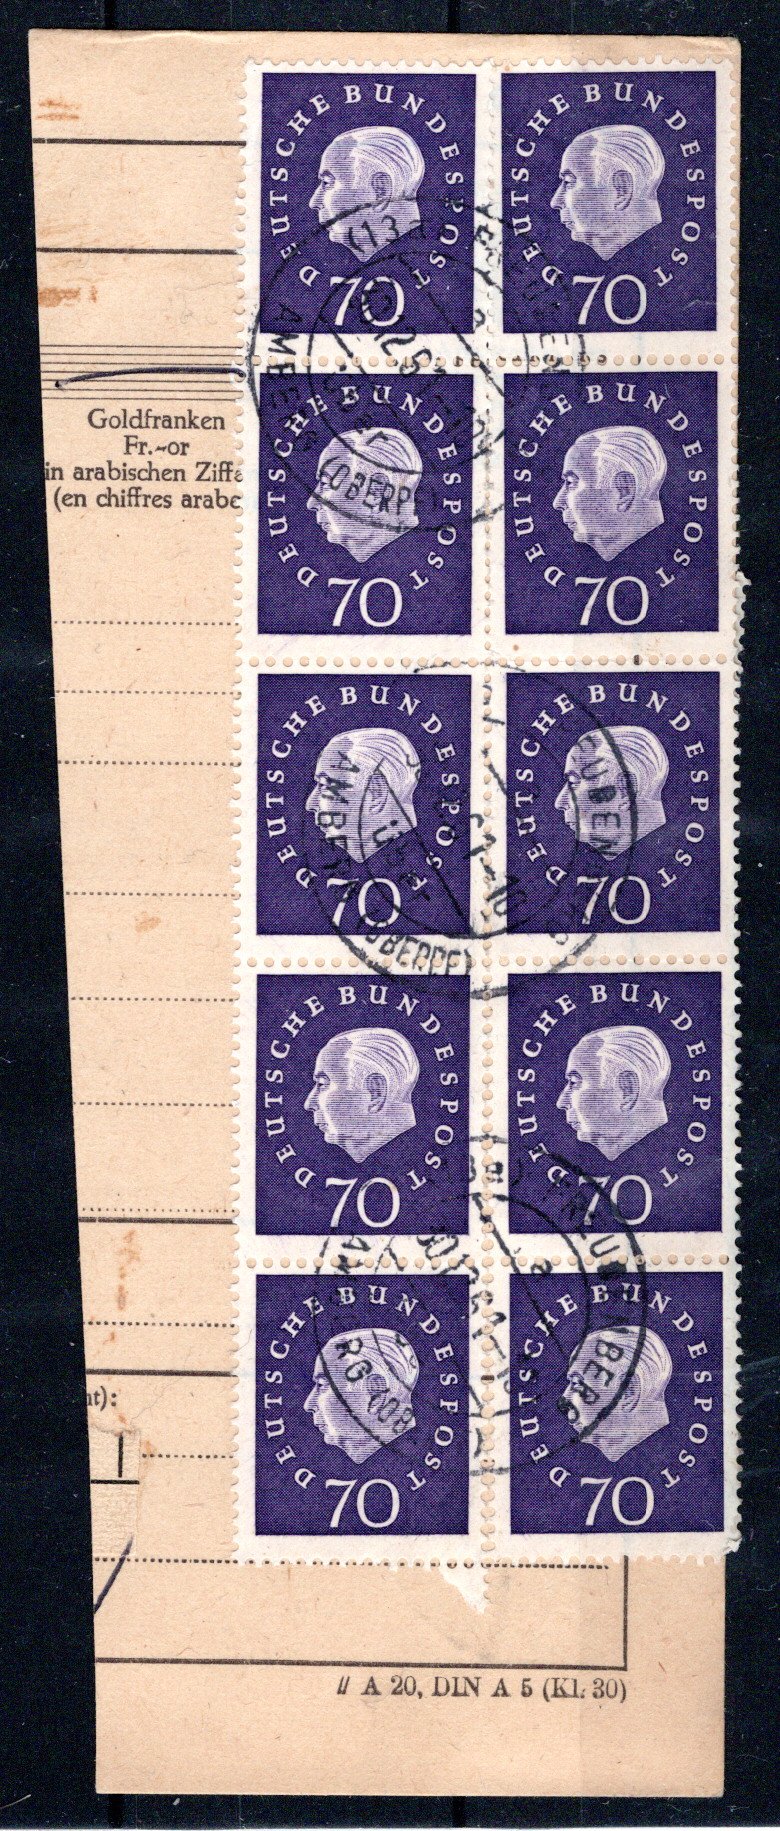 Lot 4429 - germany federal republic -  Georg Bühler Briefmarken Auktionen GmbH Georg Bühler 336 auction